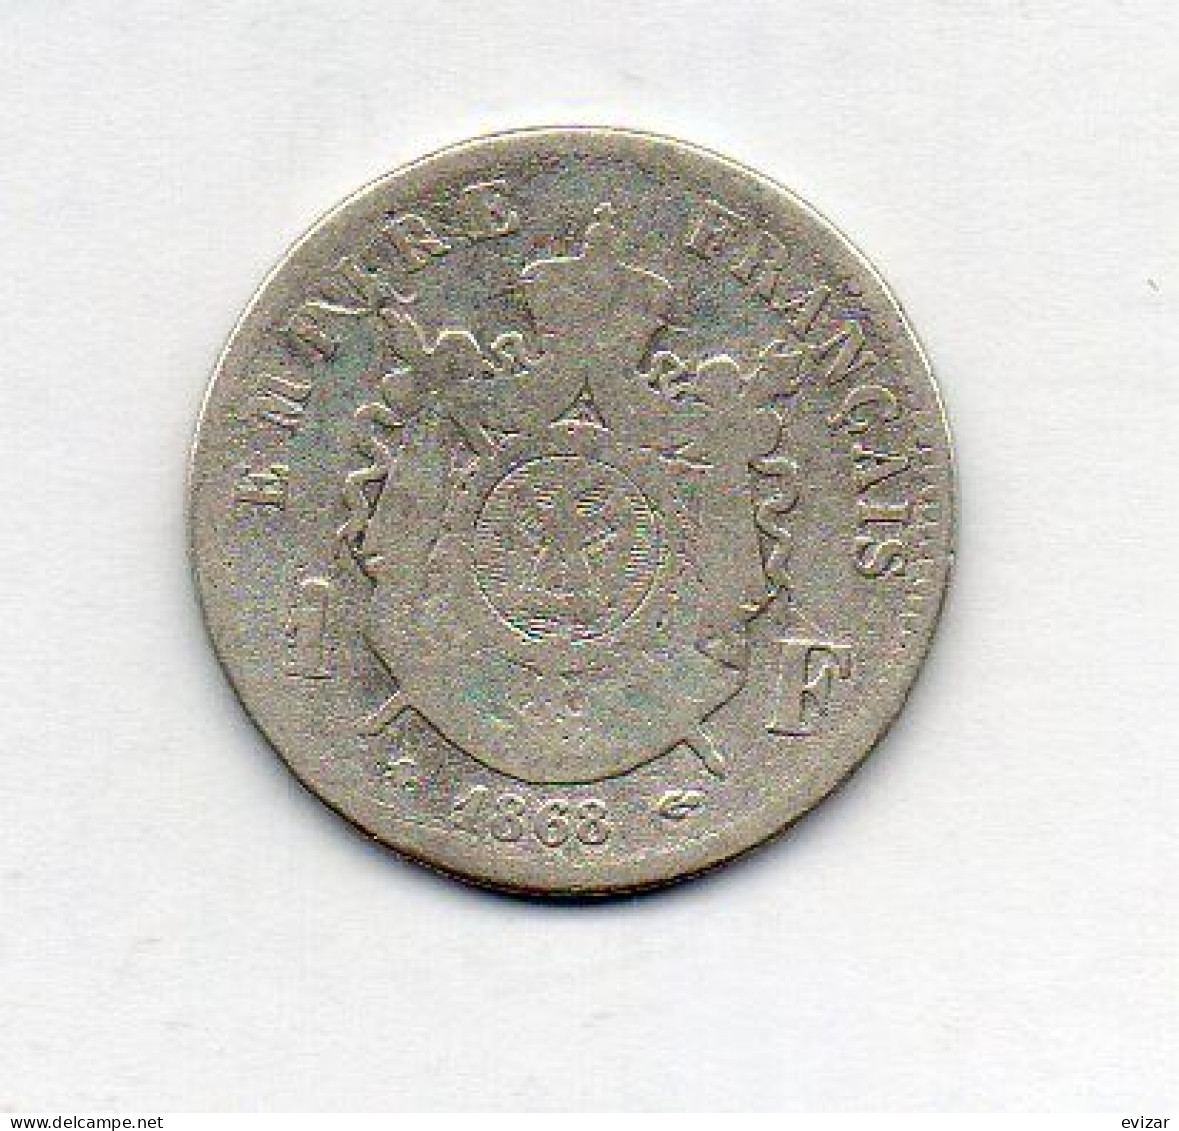 FRANCE, 1 Franc, Silver, Year 1868-A, KM # 806.1 - 1 Franc